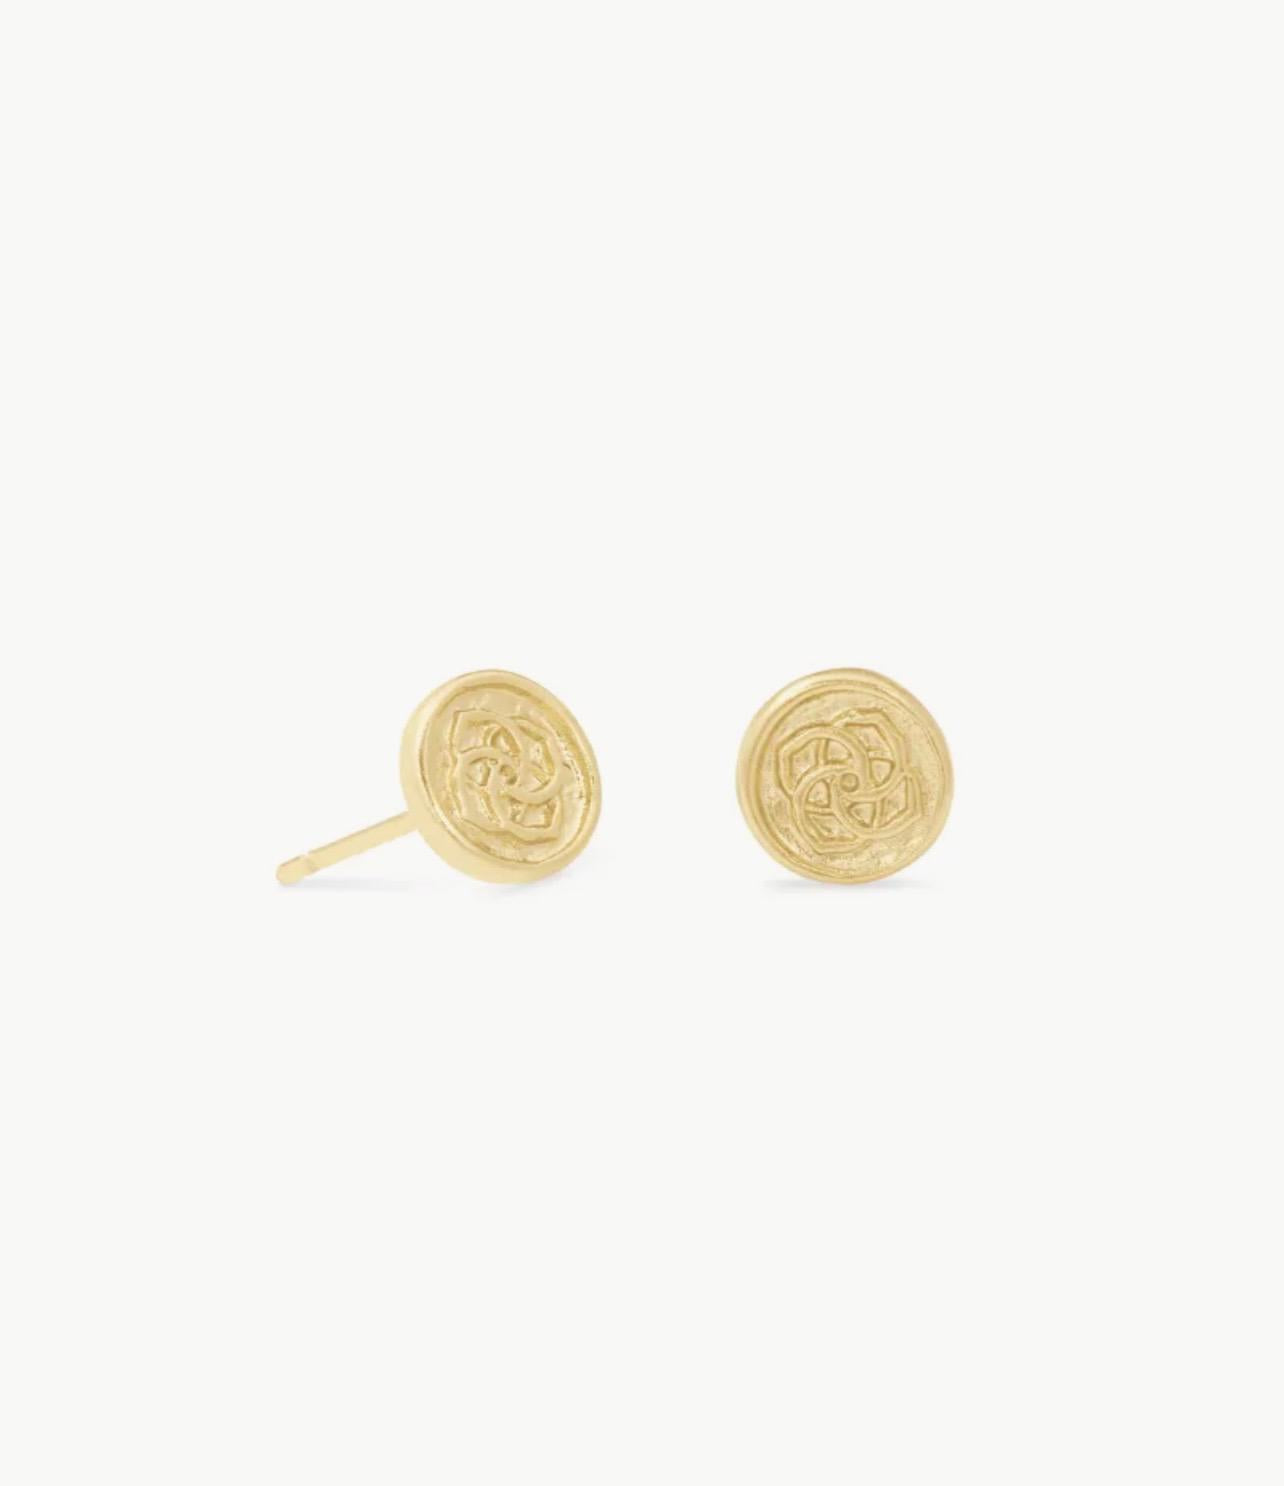 Kendra Scott Dira Coin Stud Earrings in Gold